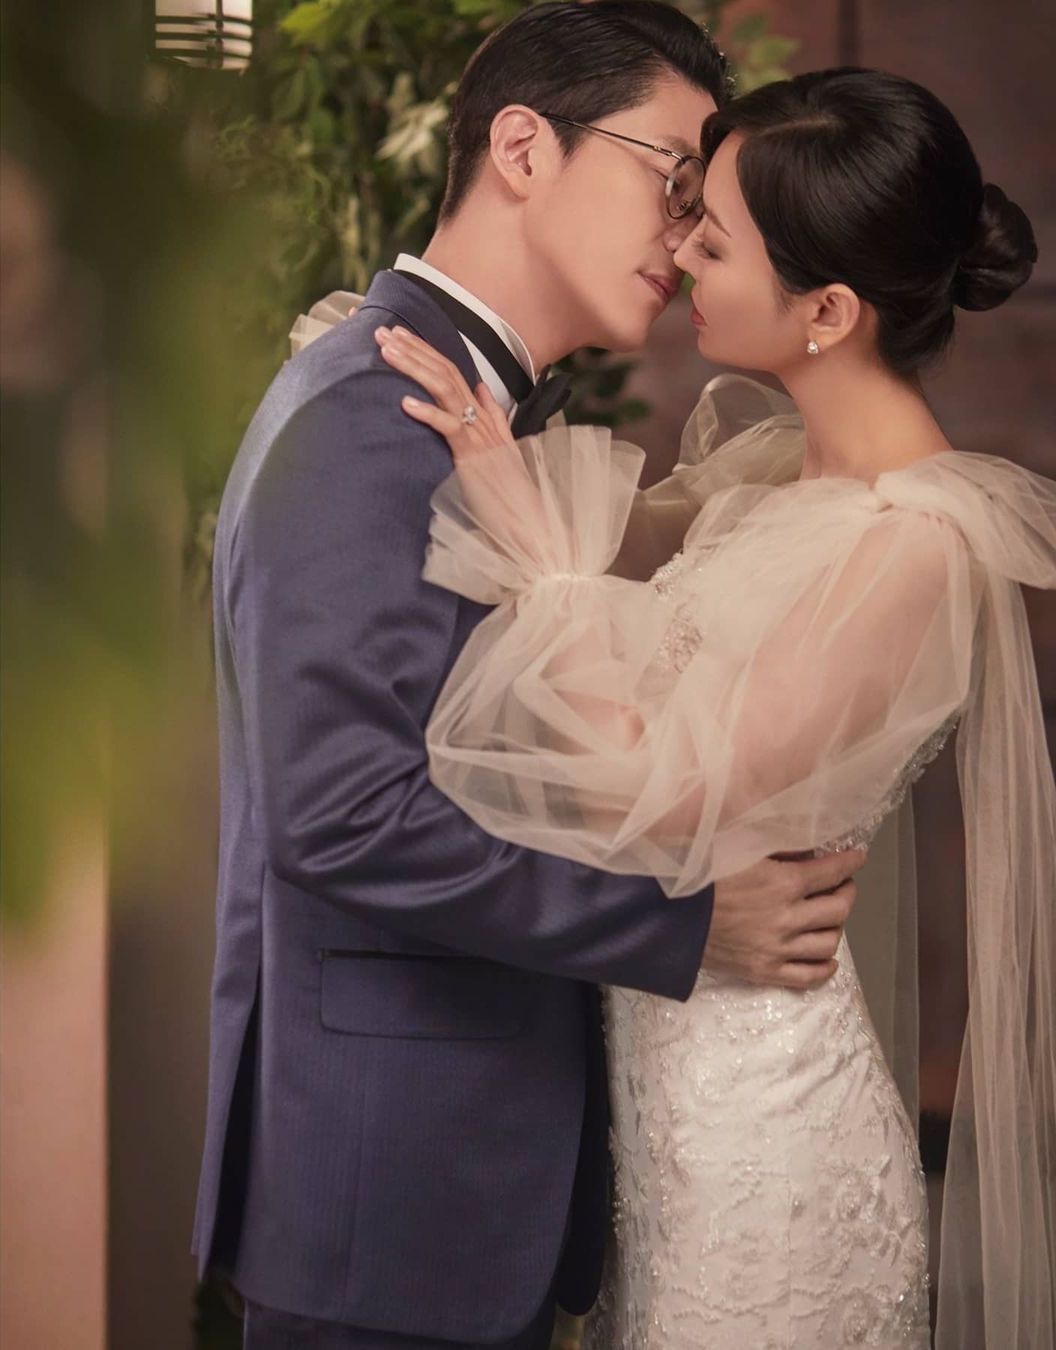 Cùng chiêm ngưỡng bộ ảnh cưới của Oh Yoon Hee, bạn sẽ bị thu hút bởi sự thanh lịch, sang trọng và tình tứ của đôi uyên ương. Những khoảnh khắc tuyệt đẹp, giản đơn nhưng cực kì ý nghĩa sẽ giúp bạn cảm nhận được tình yêu đích thực.